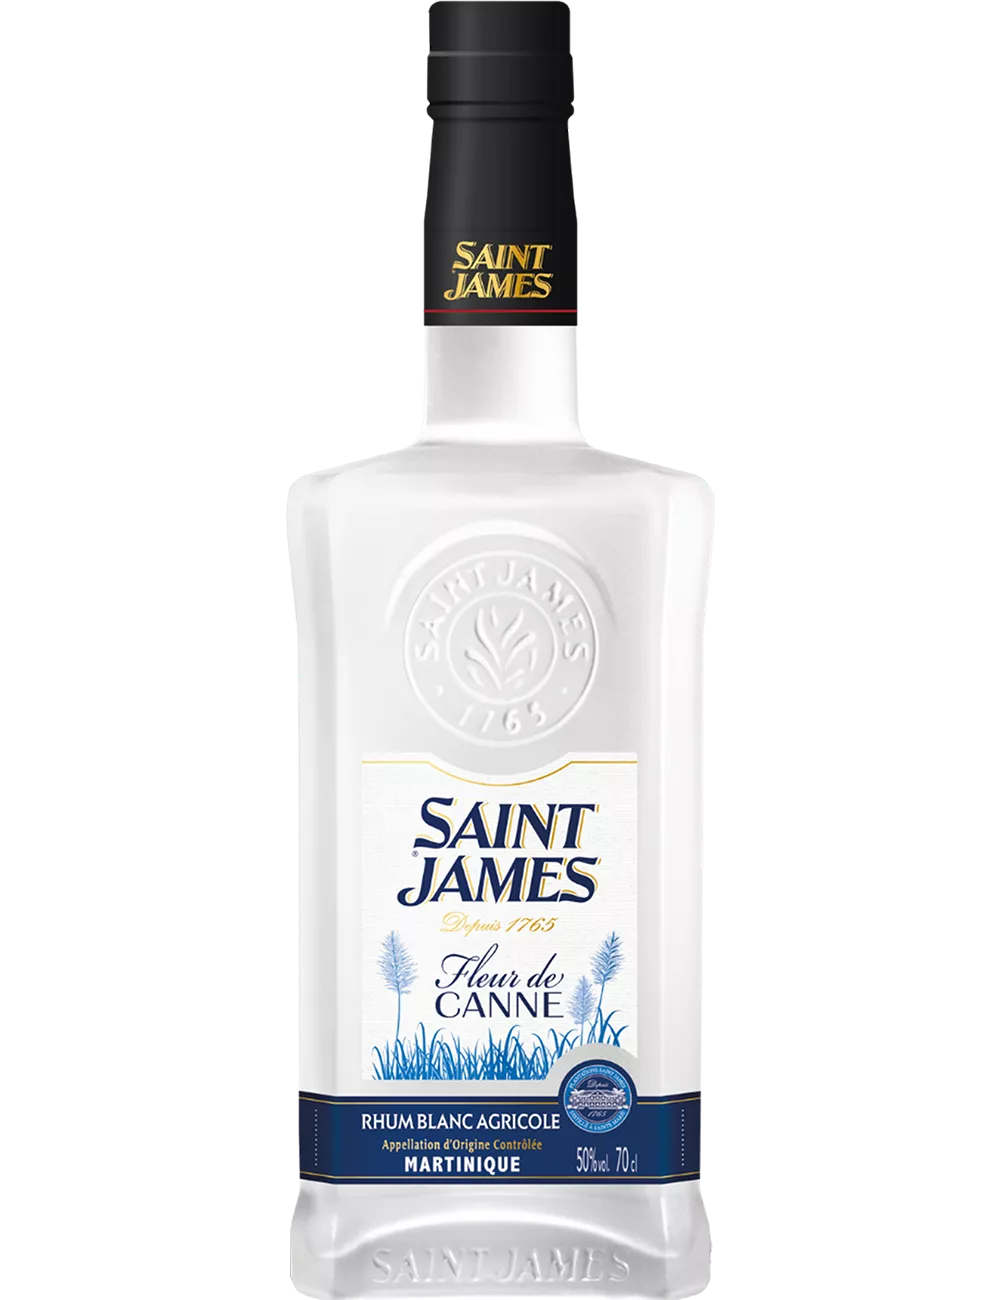 Saint James - Fleur de Canne - Rhum blanc agricole